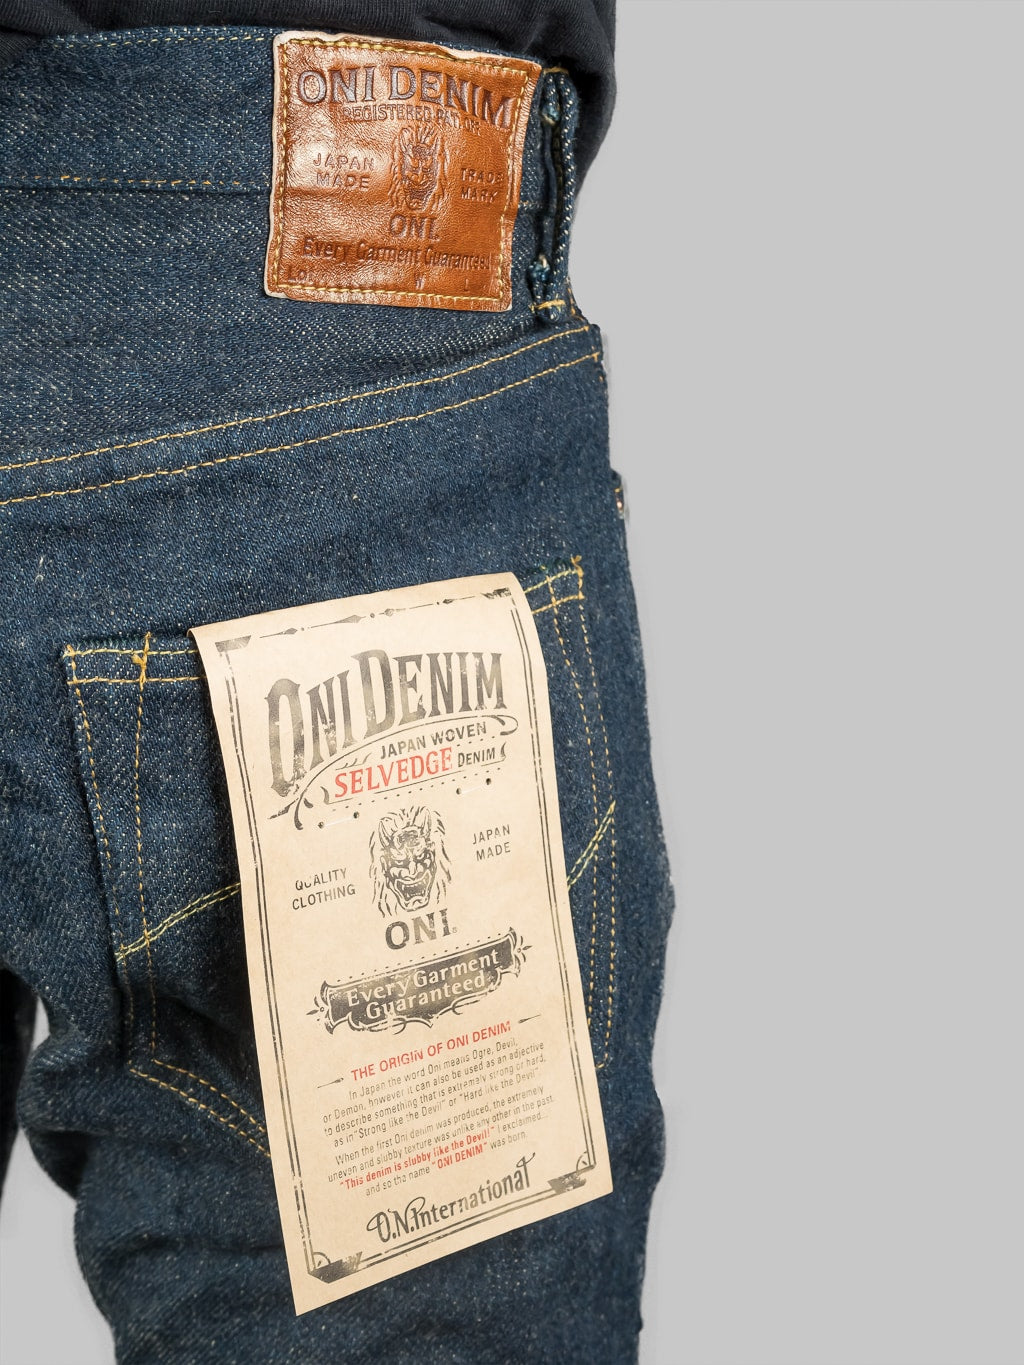 oni denim 902zr secret denim 20oz jeans back details